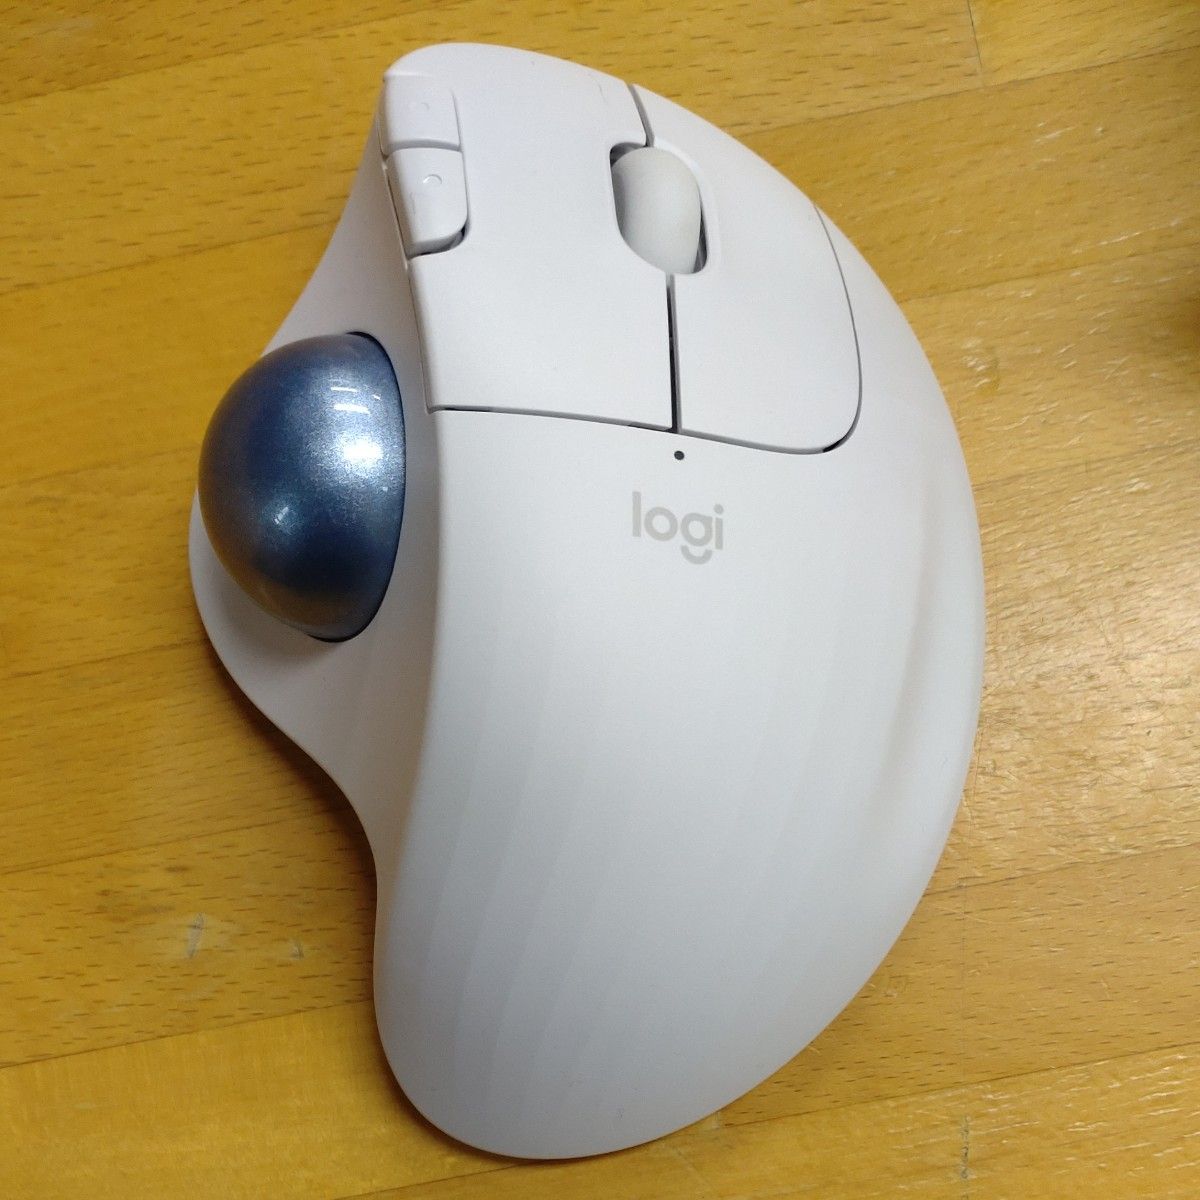 マウス ロジクール ワイヤレスマウス トラックボール 無線 トラックボールマウス ワイヤレス 正規品